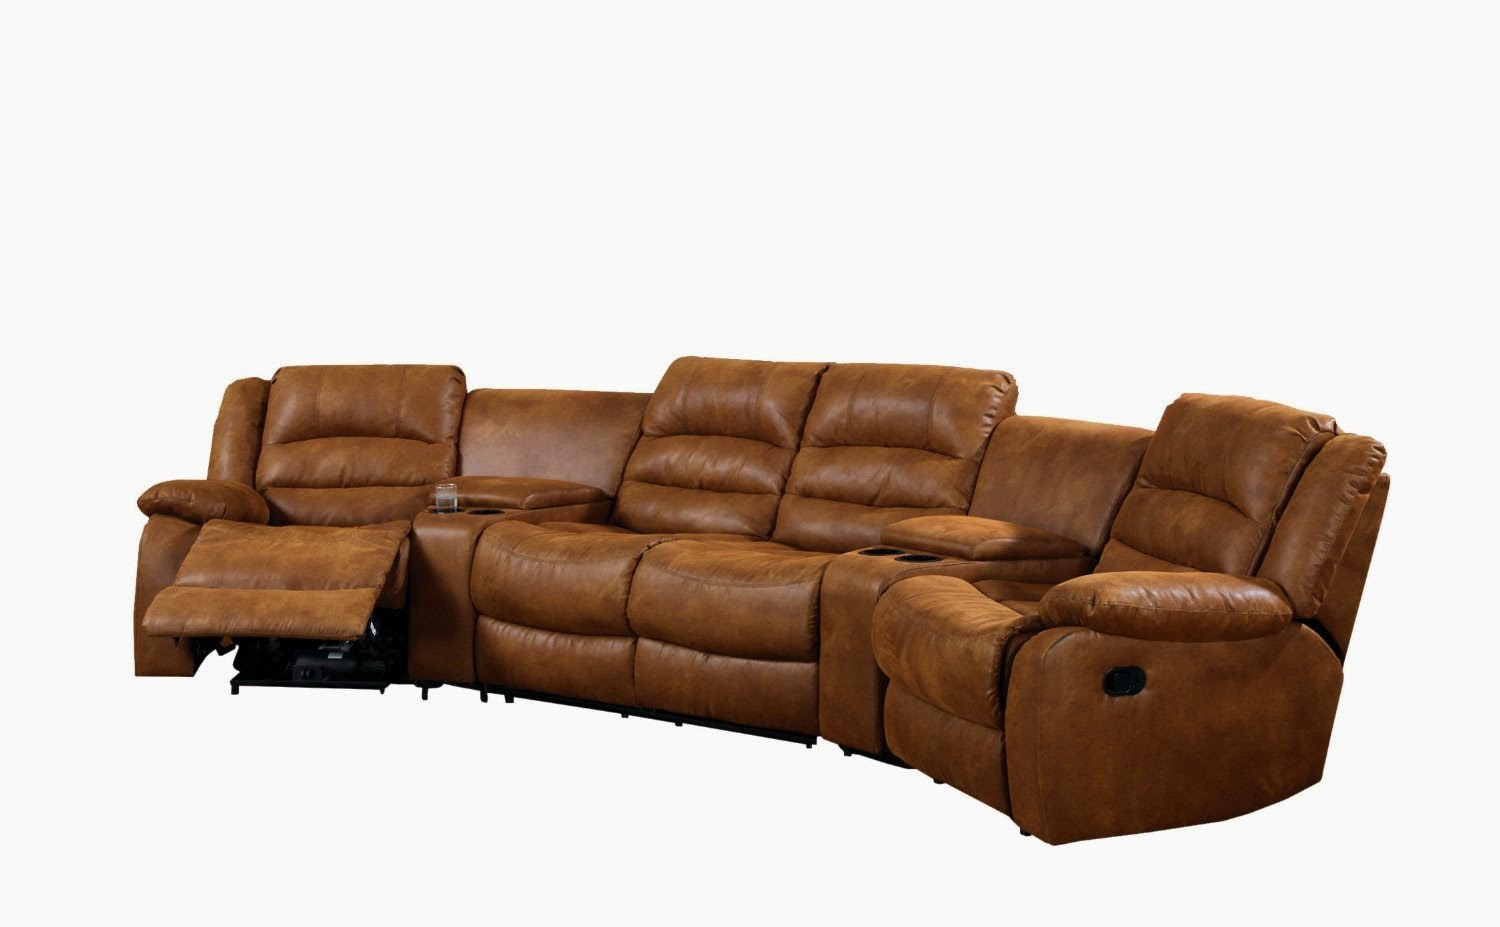 curve leather sofa ikea